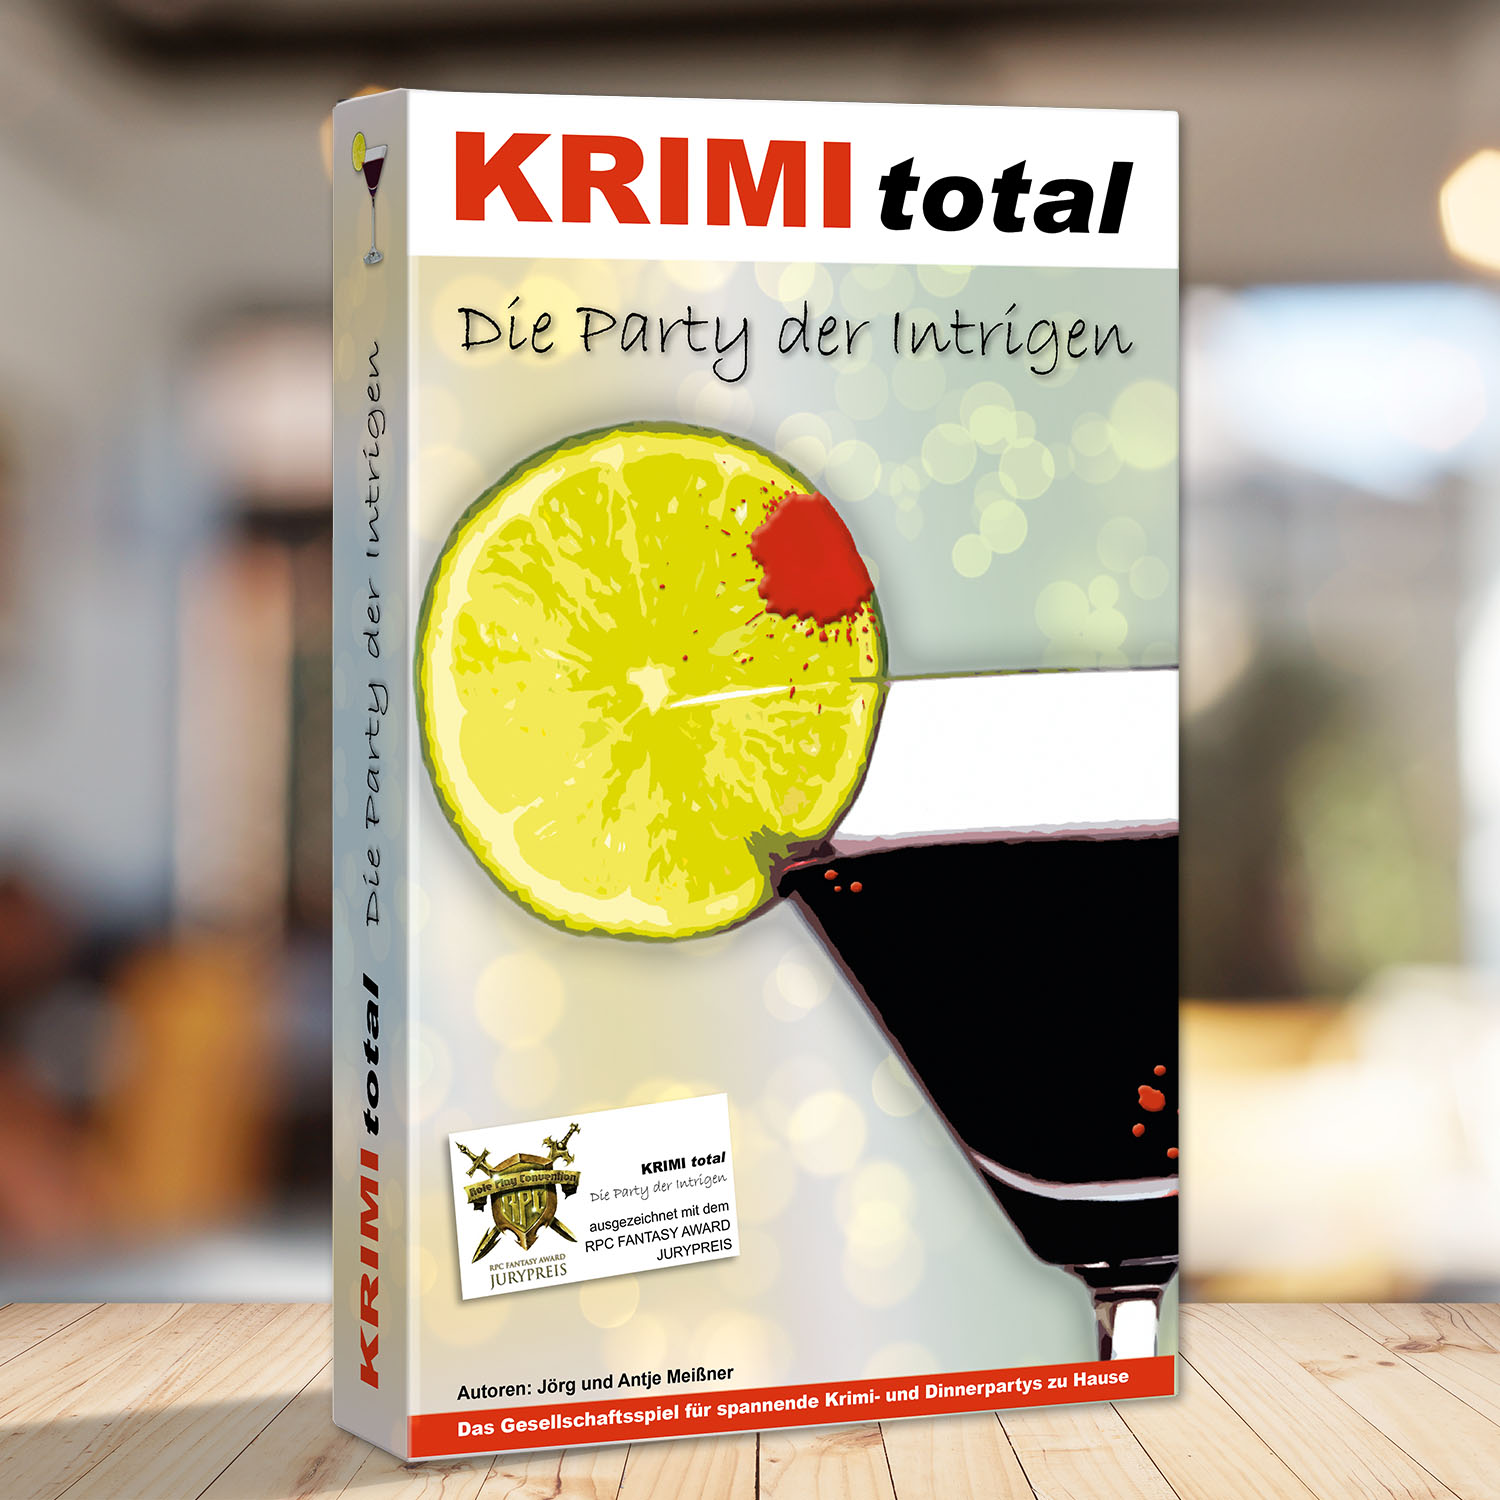 Abbildung eines Spielkartons des Krimispiels "KRIMI total - Die Party der Intrigen"